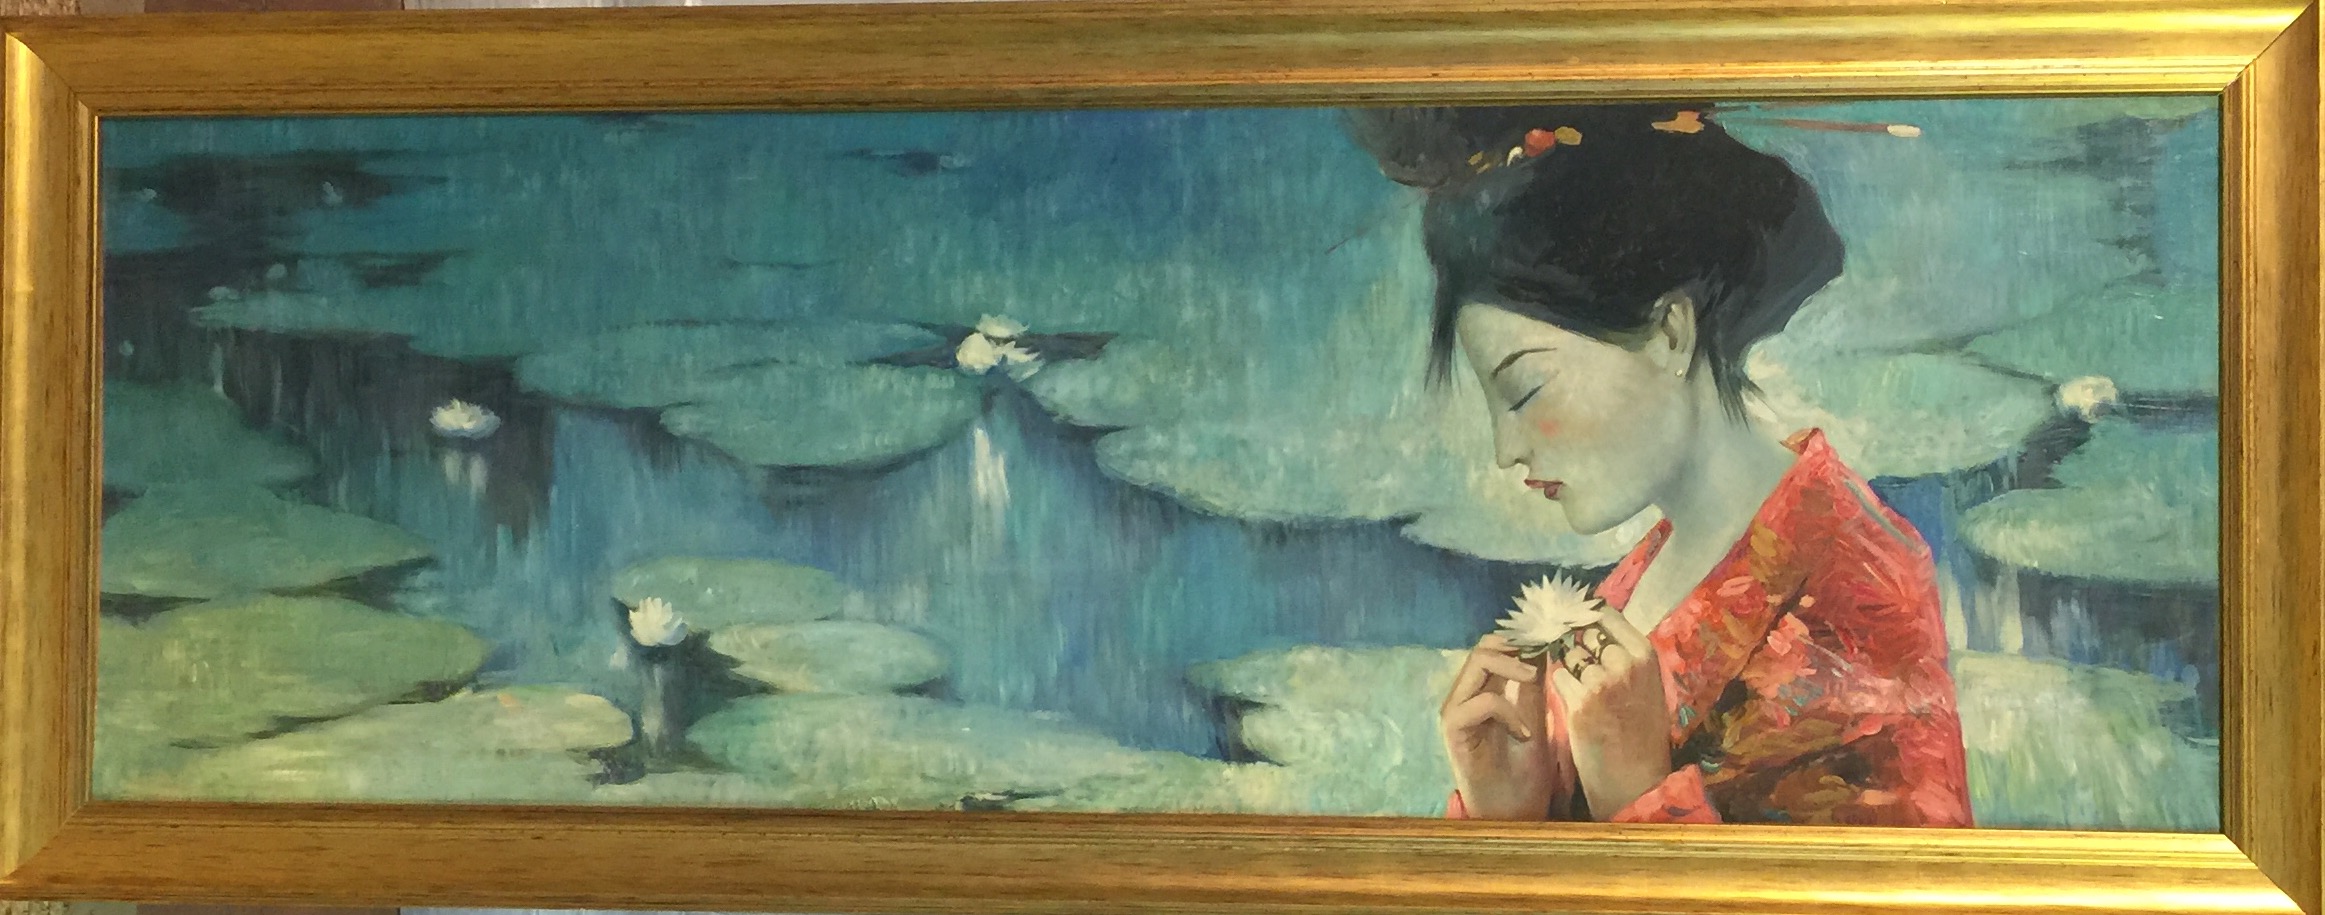 A MID 20TH CENTURY OIL ON CANVAS Geisha by a lily pond, gilt framed. (131cm x 51cm)